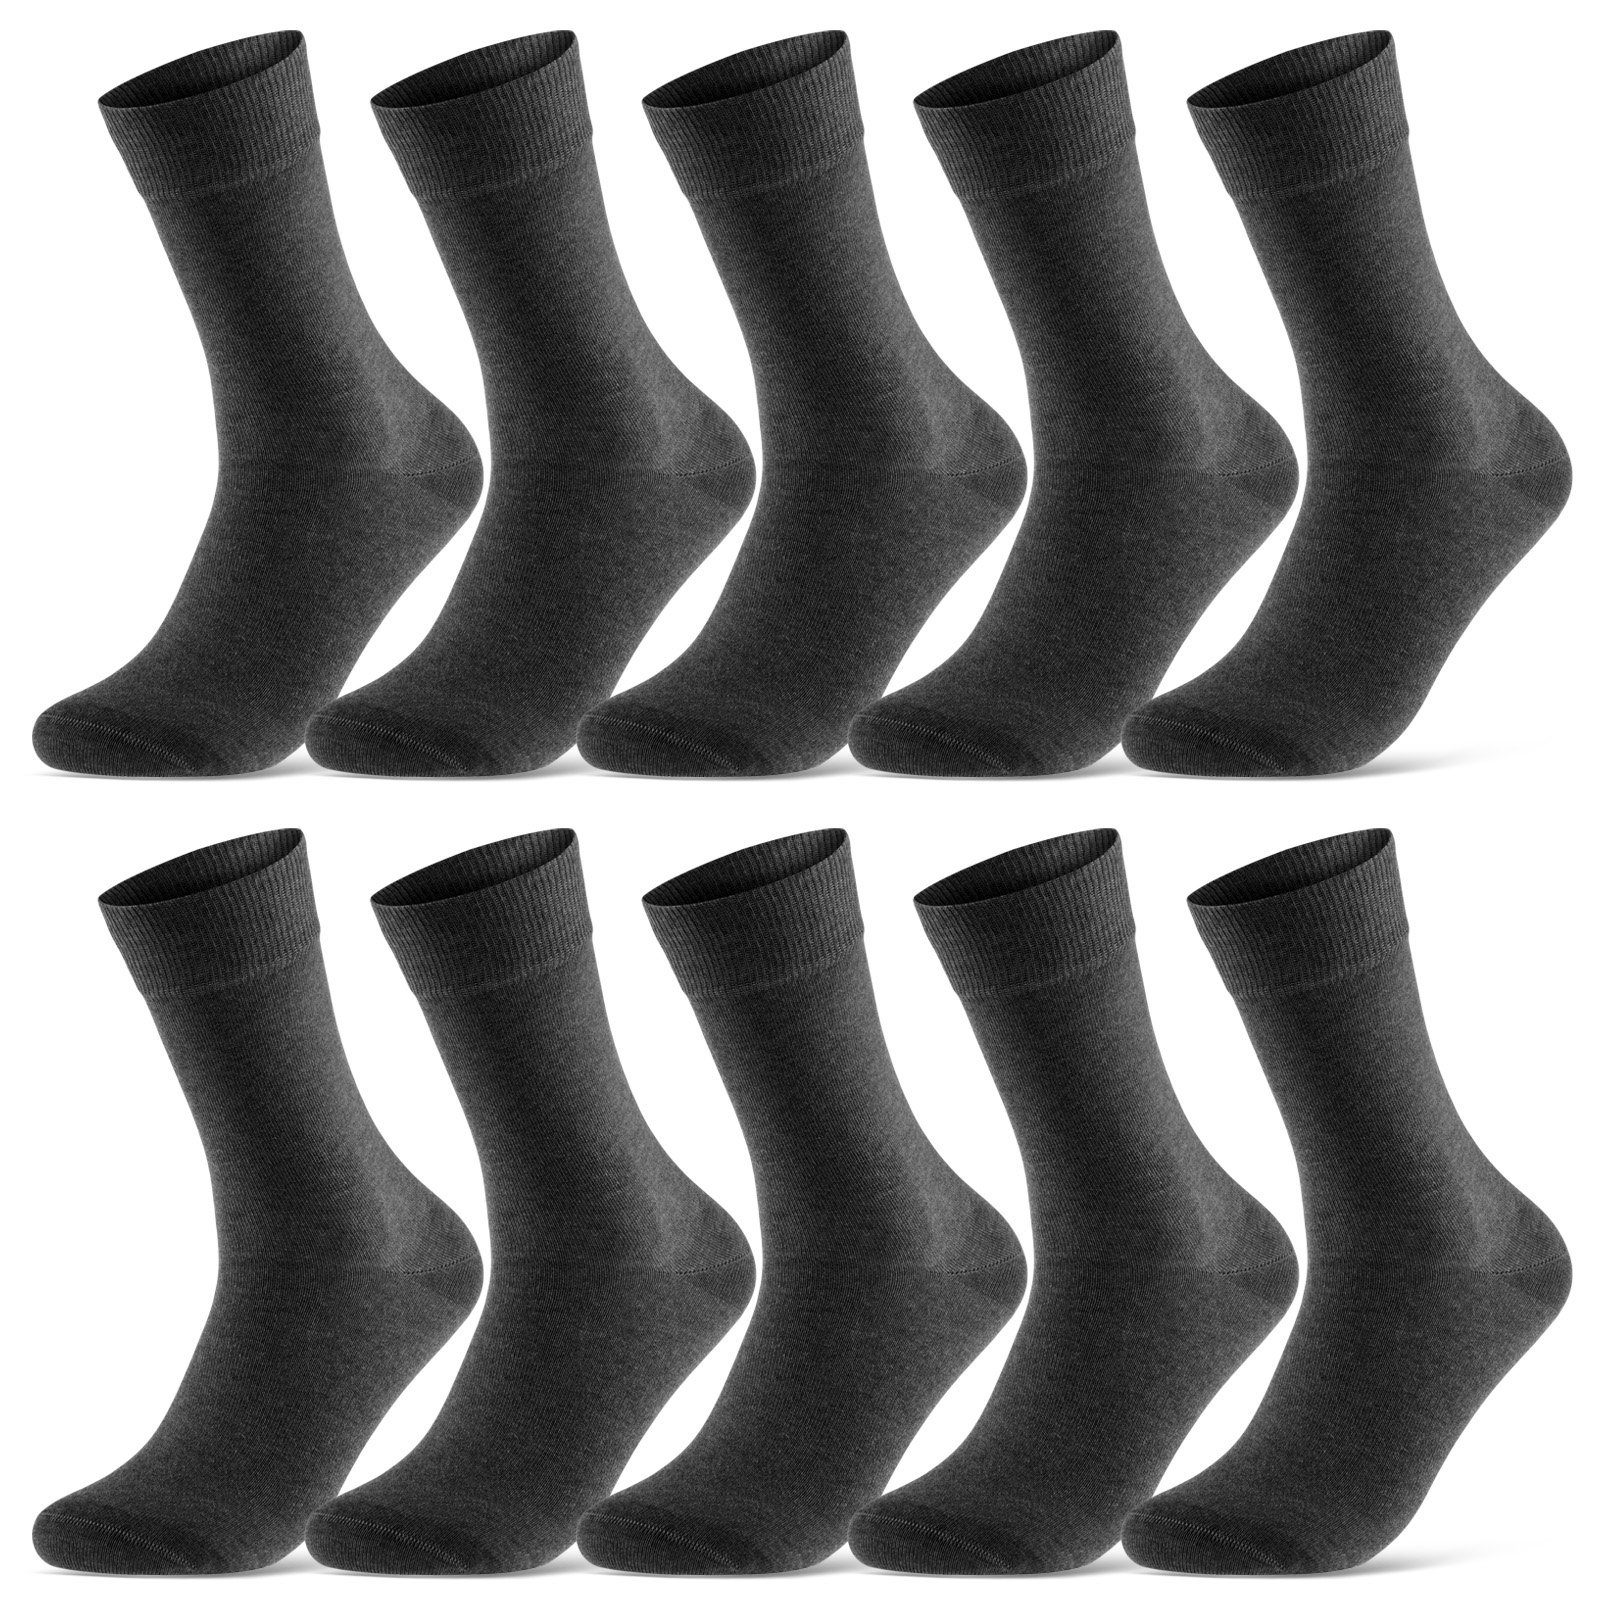 sockenkauf24 Socken Baumwolle Socken 10 Damen Herren Business 39-42) Paar Komfortbund mit & 70201T - (Basicline) (Anthrazit, WP Socken